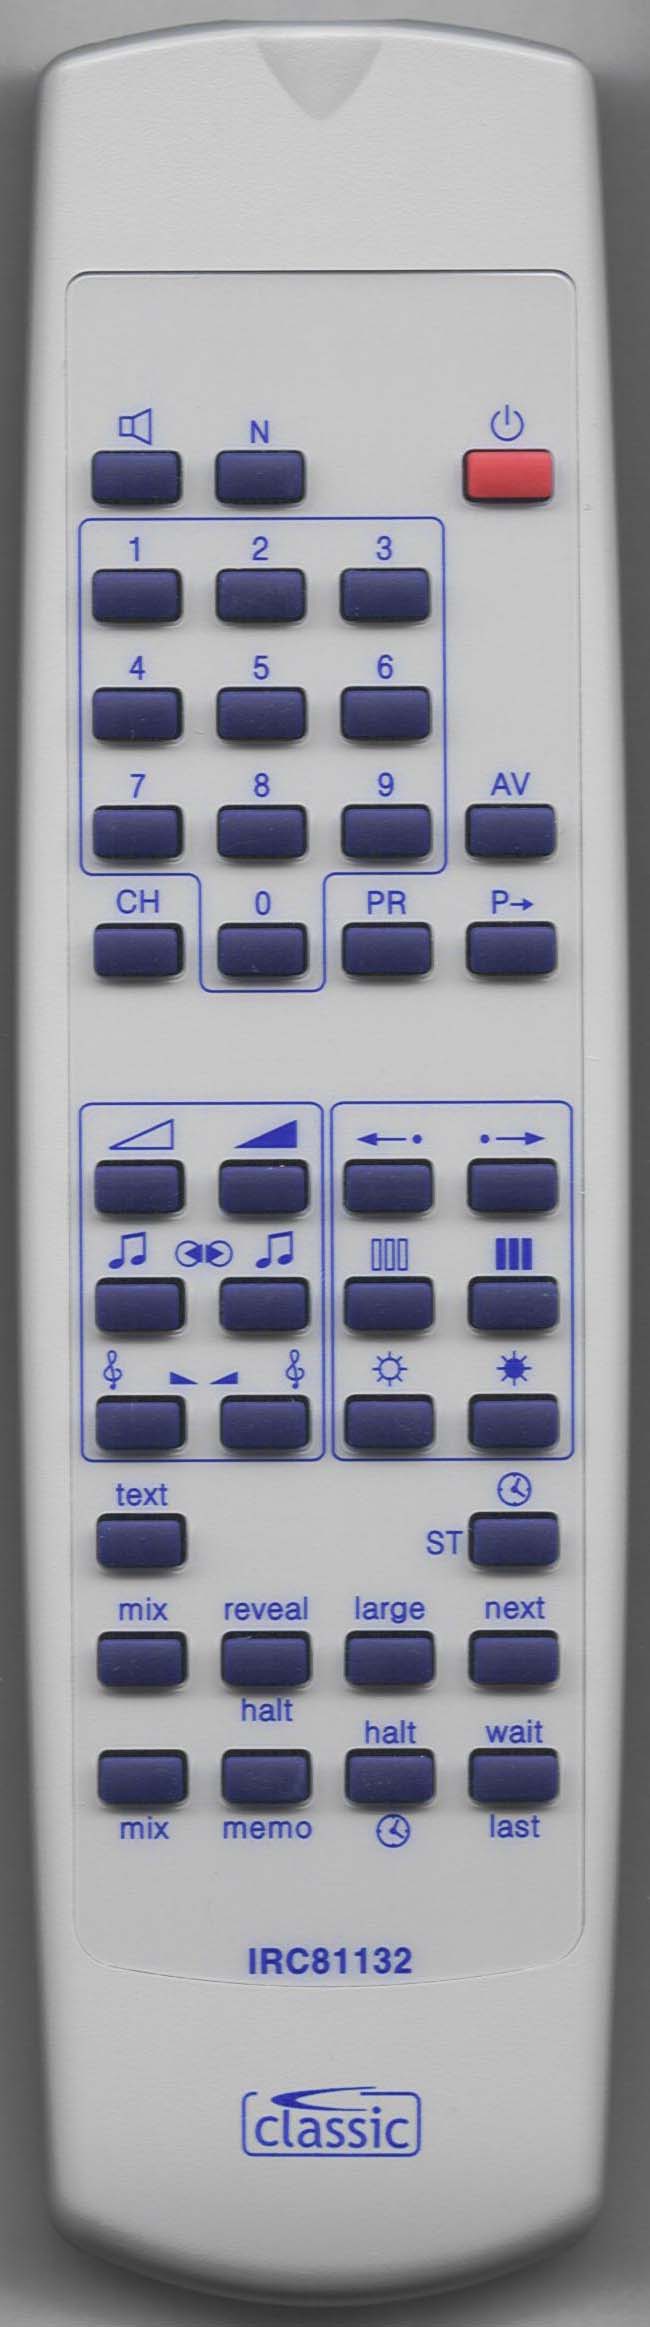 LUXOR 190 9501-15 Remote Control